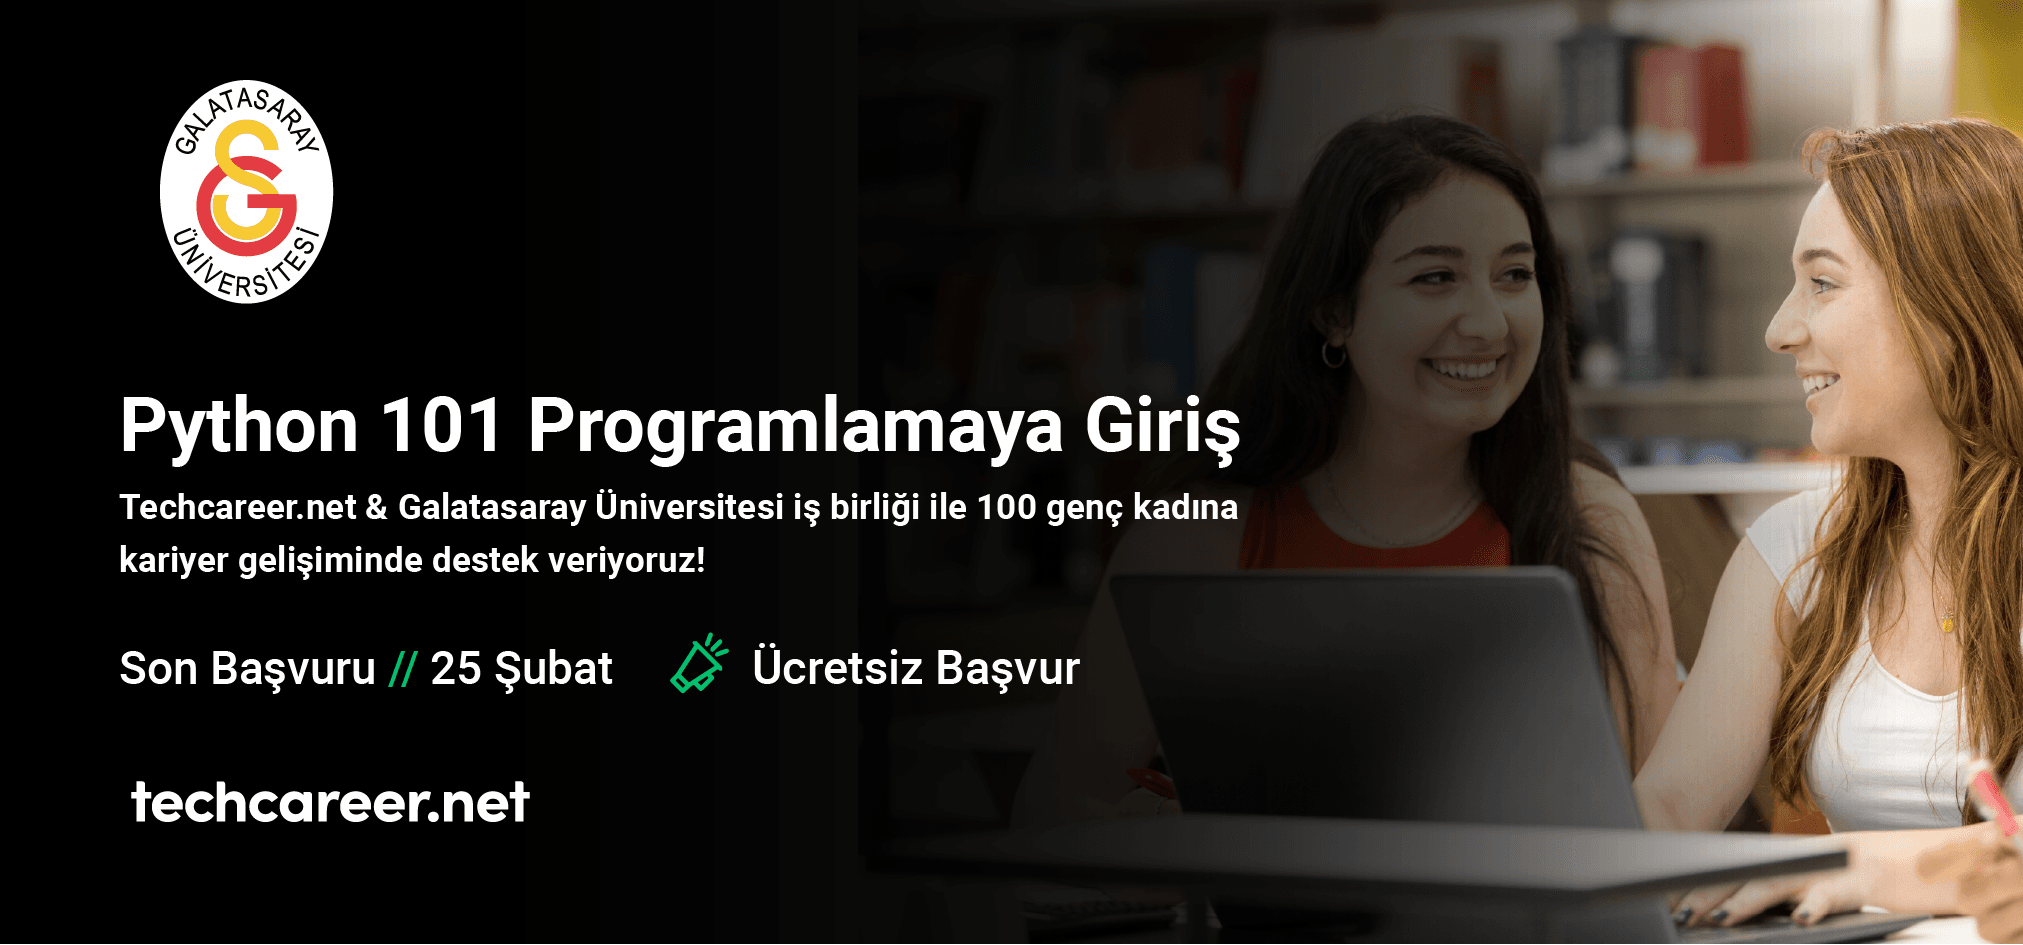 Galatasaray University Python 101 Bootcamp